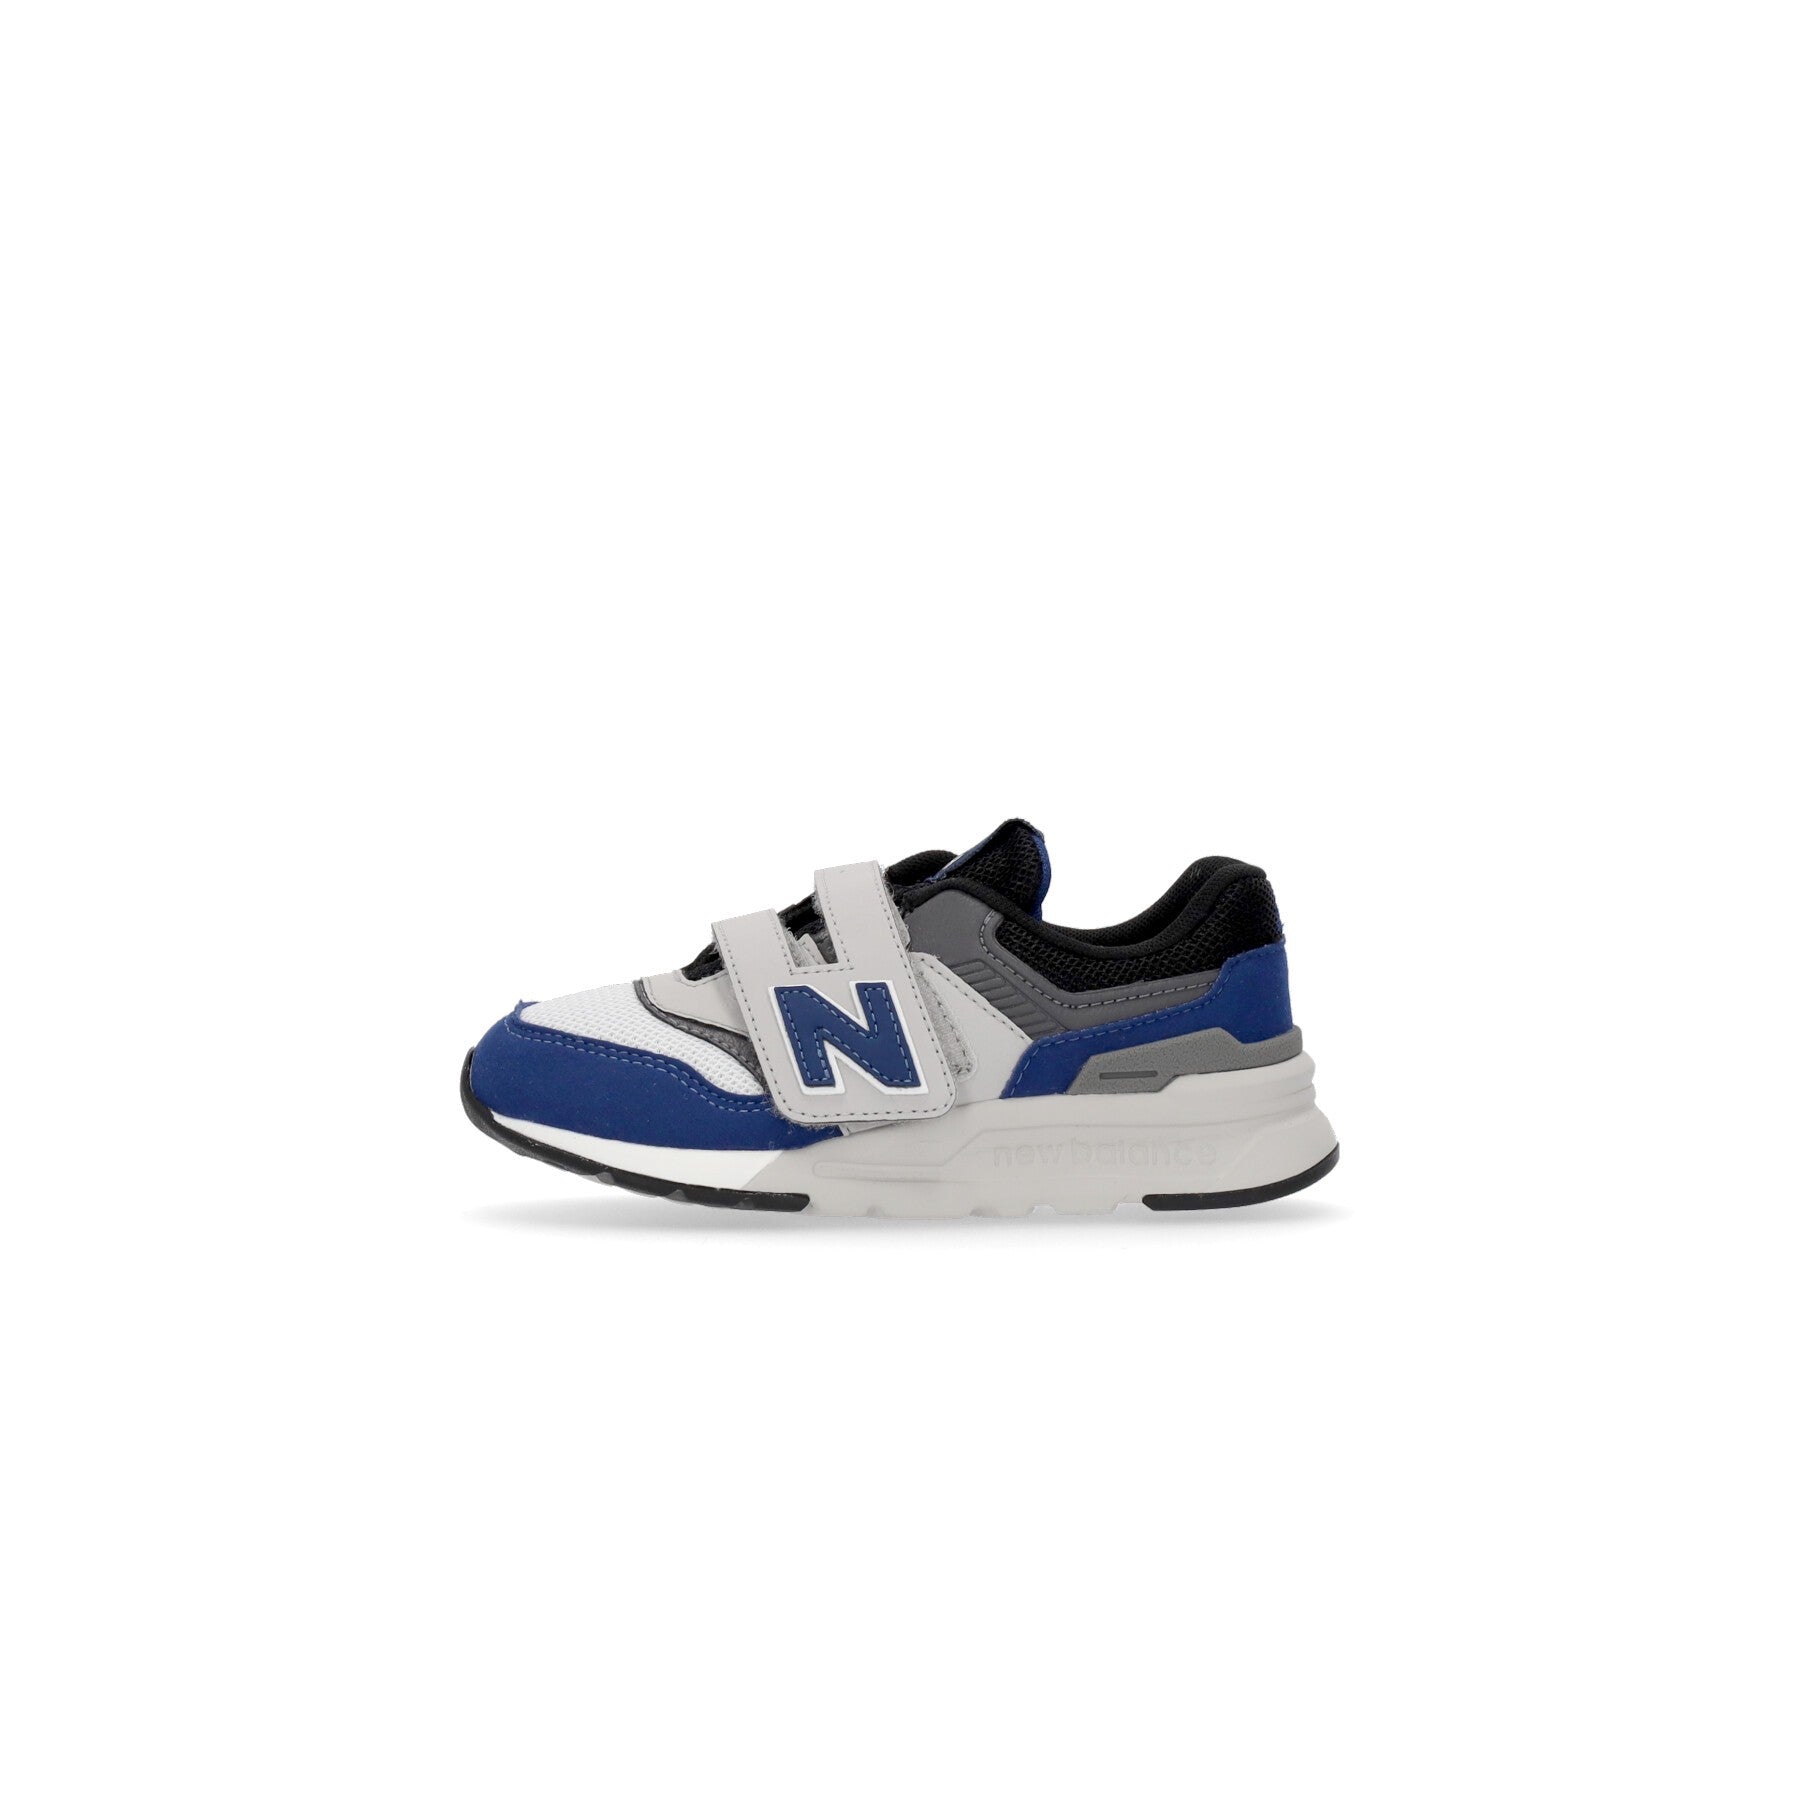 Low Child Shoe 997 Blue